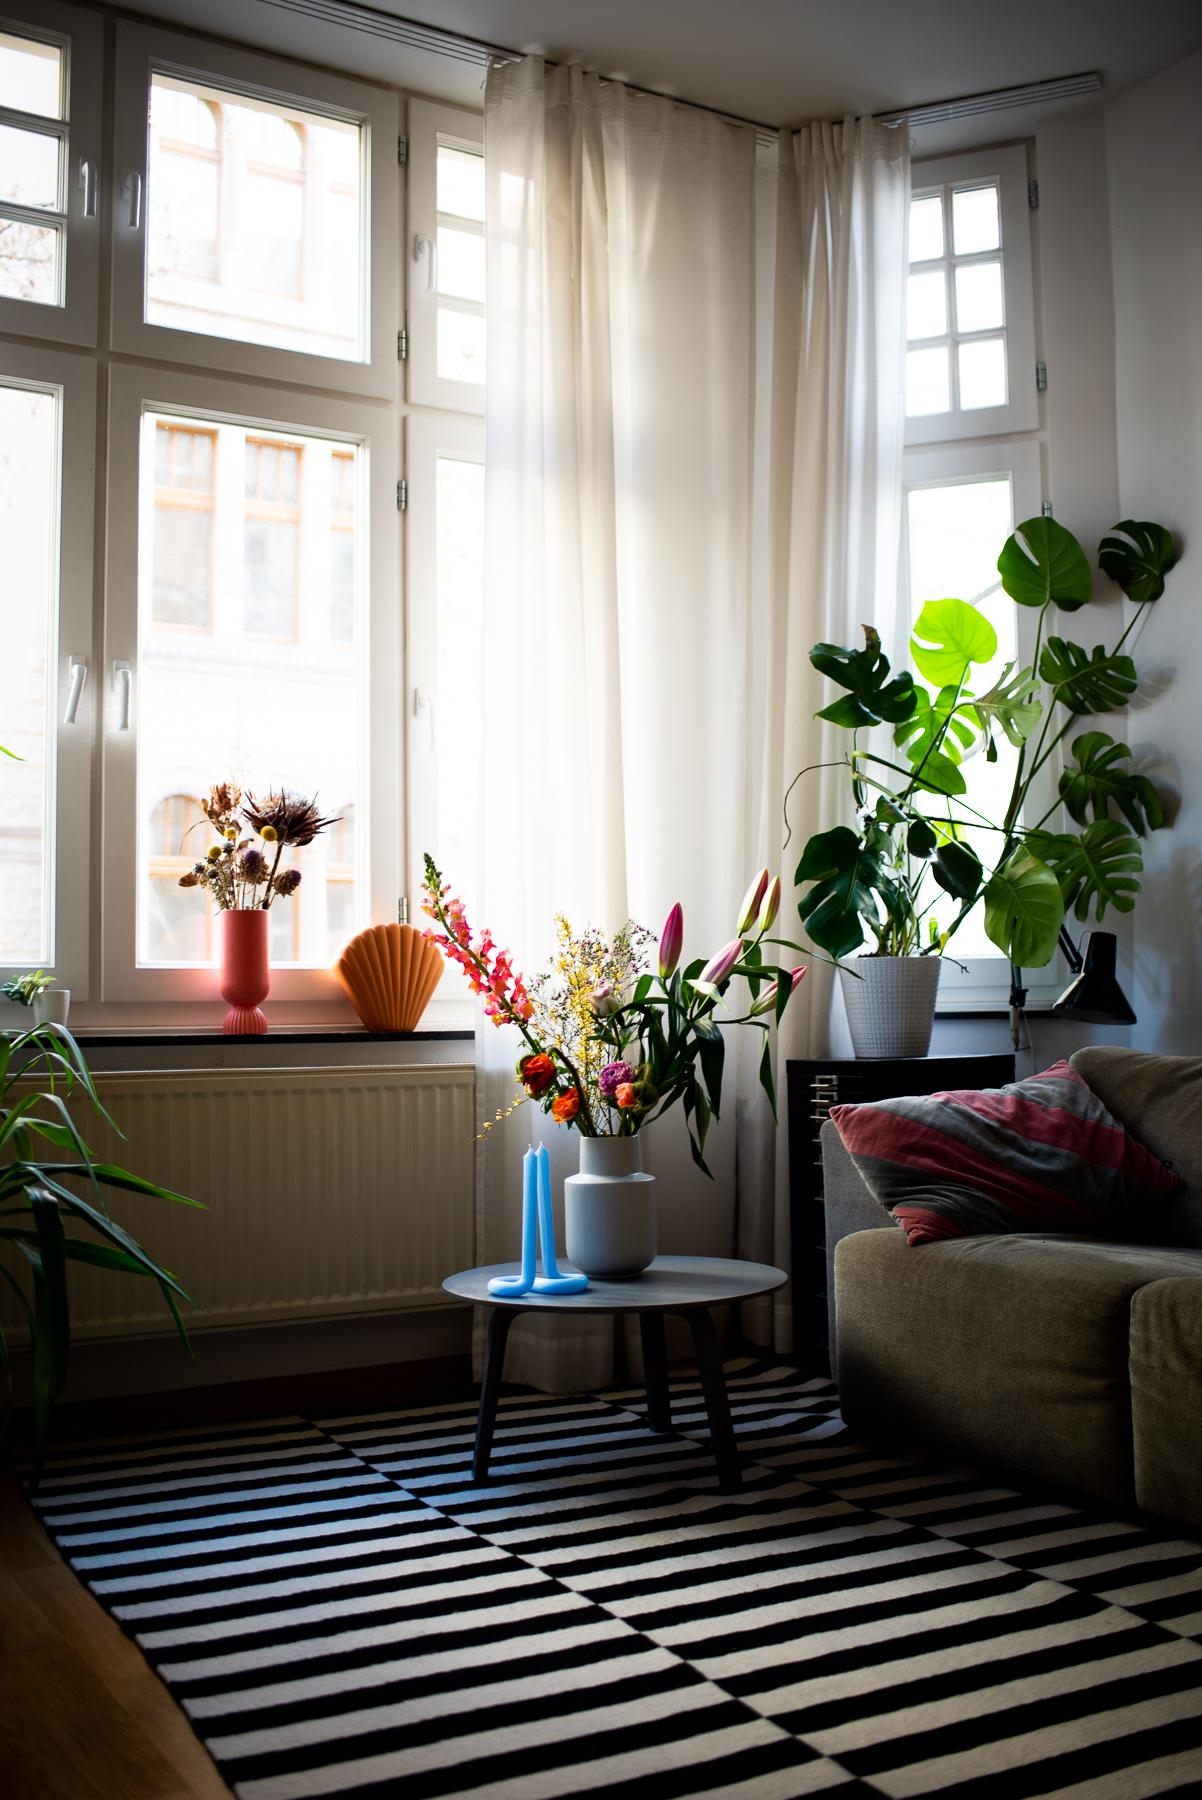 Der Frühling naht 💜 #wohnzimmer #couch #couchtisch #kerzen #vasen #deko #kissen #altbau #monstera #pflanzen #blumen 